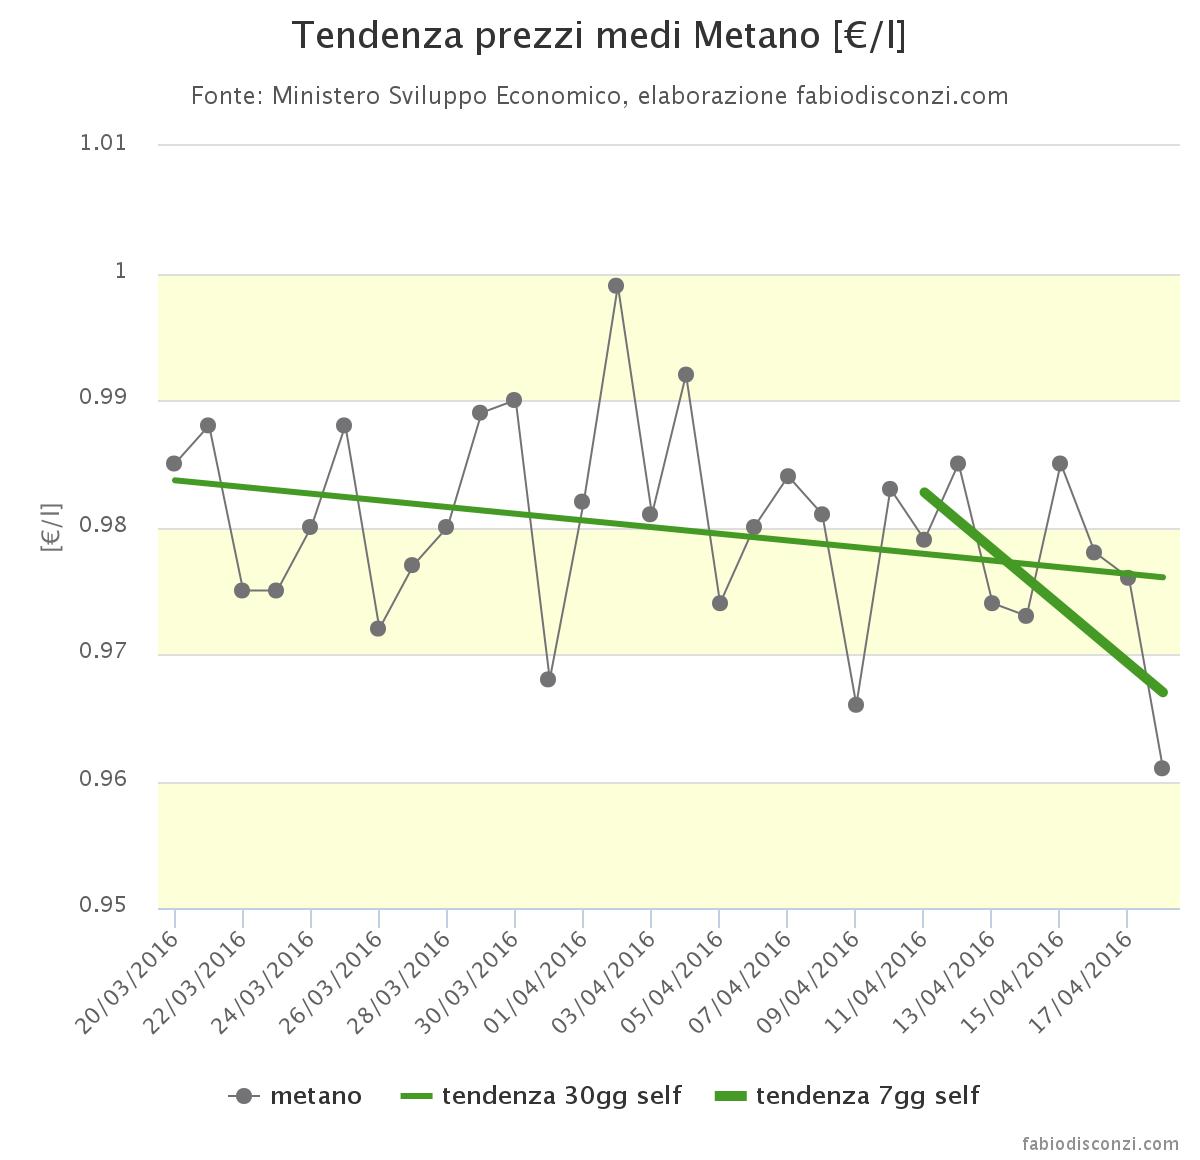 analisi prezzi medi metano 11-18 aprile 2016